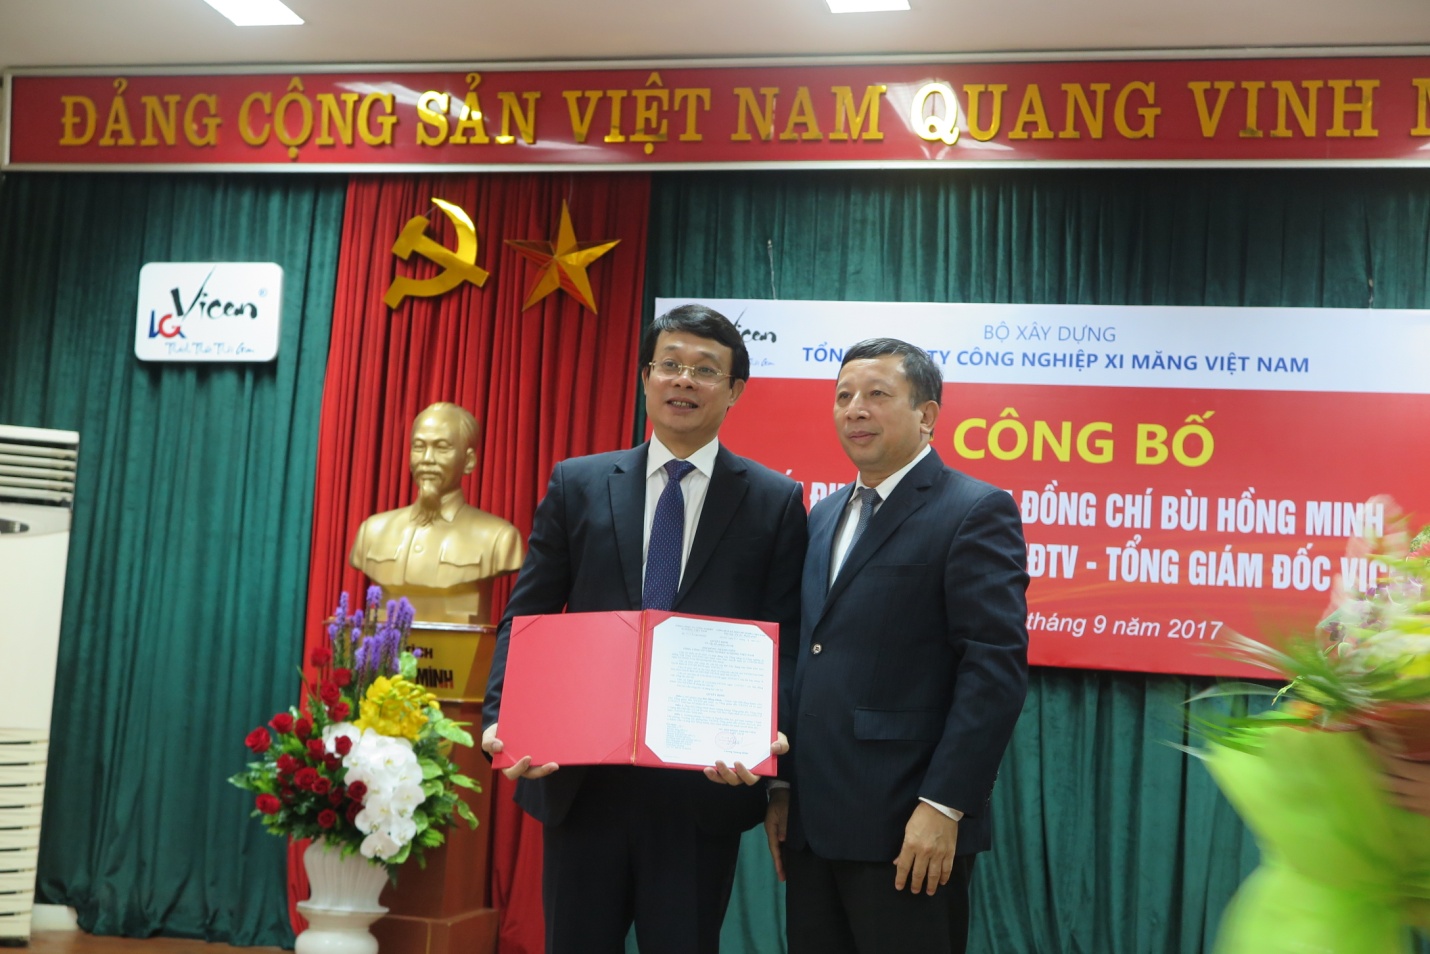 Ông Lương Quang Khải, Chủ tịch Hội đồng thành viên VICEM chúc mừng tân Tổng giám đốc Bùi Hồng Minh.